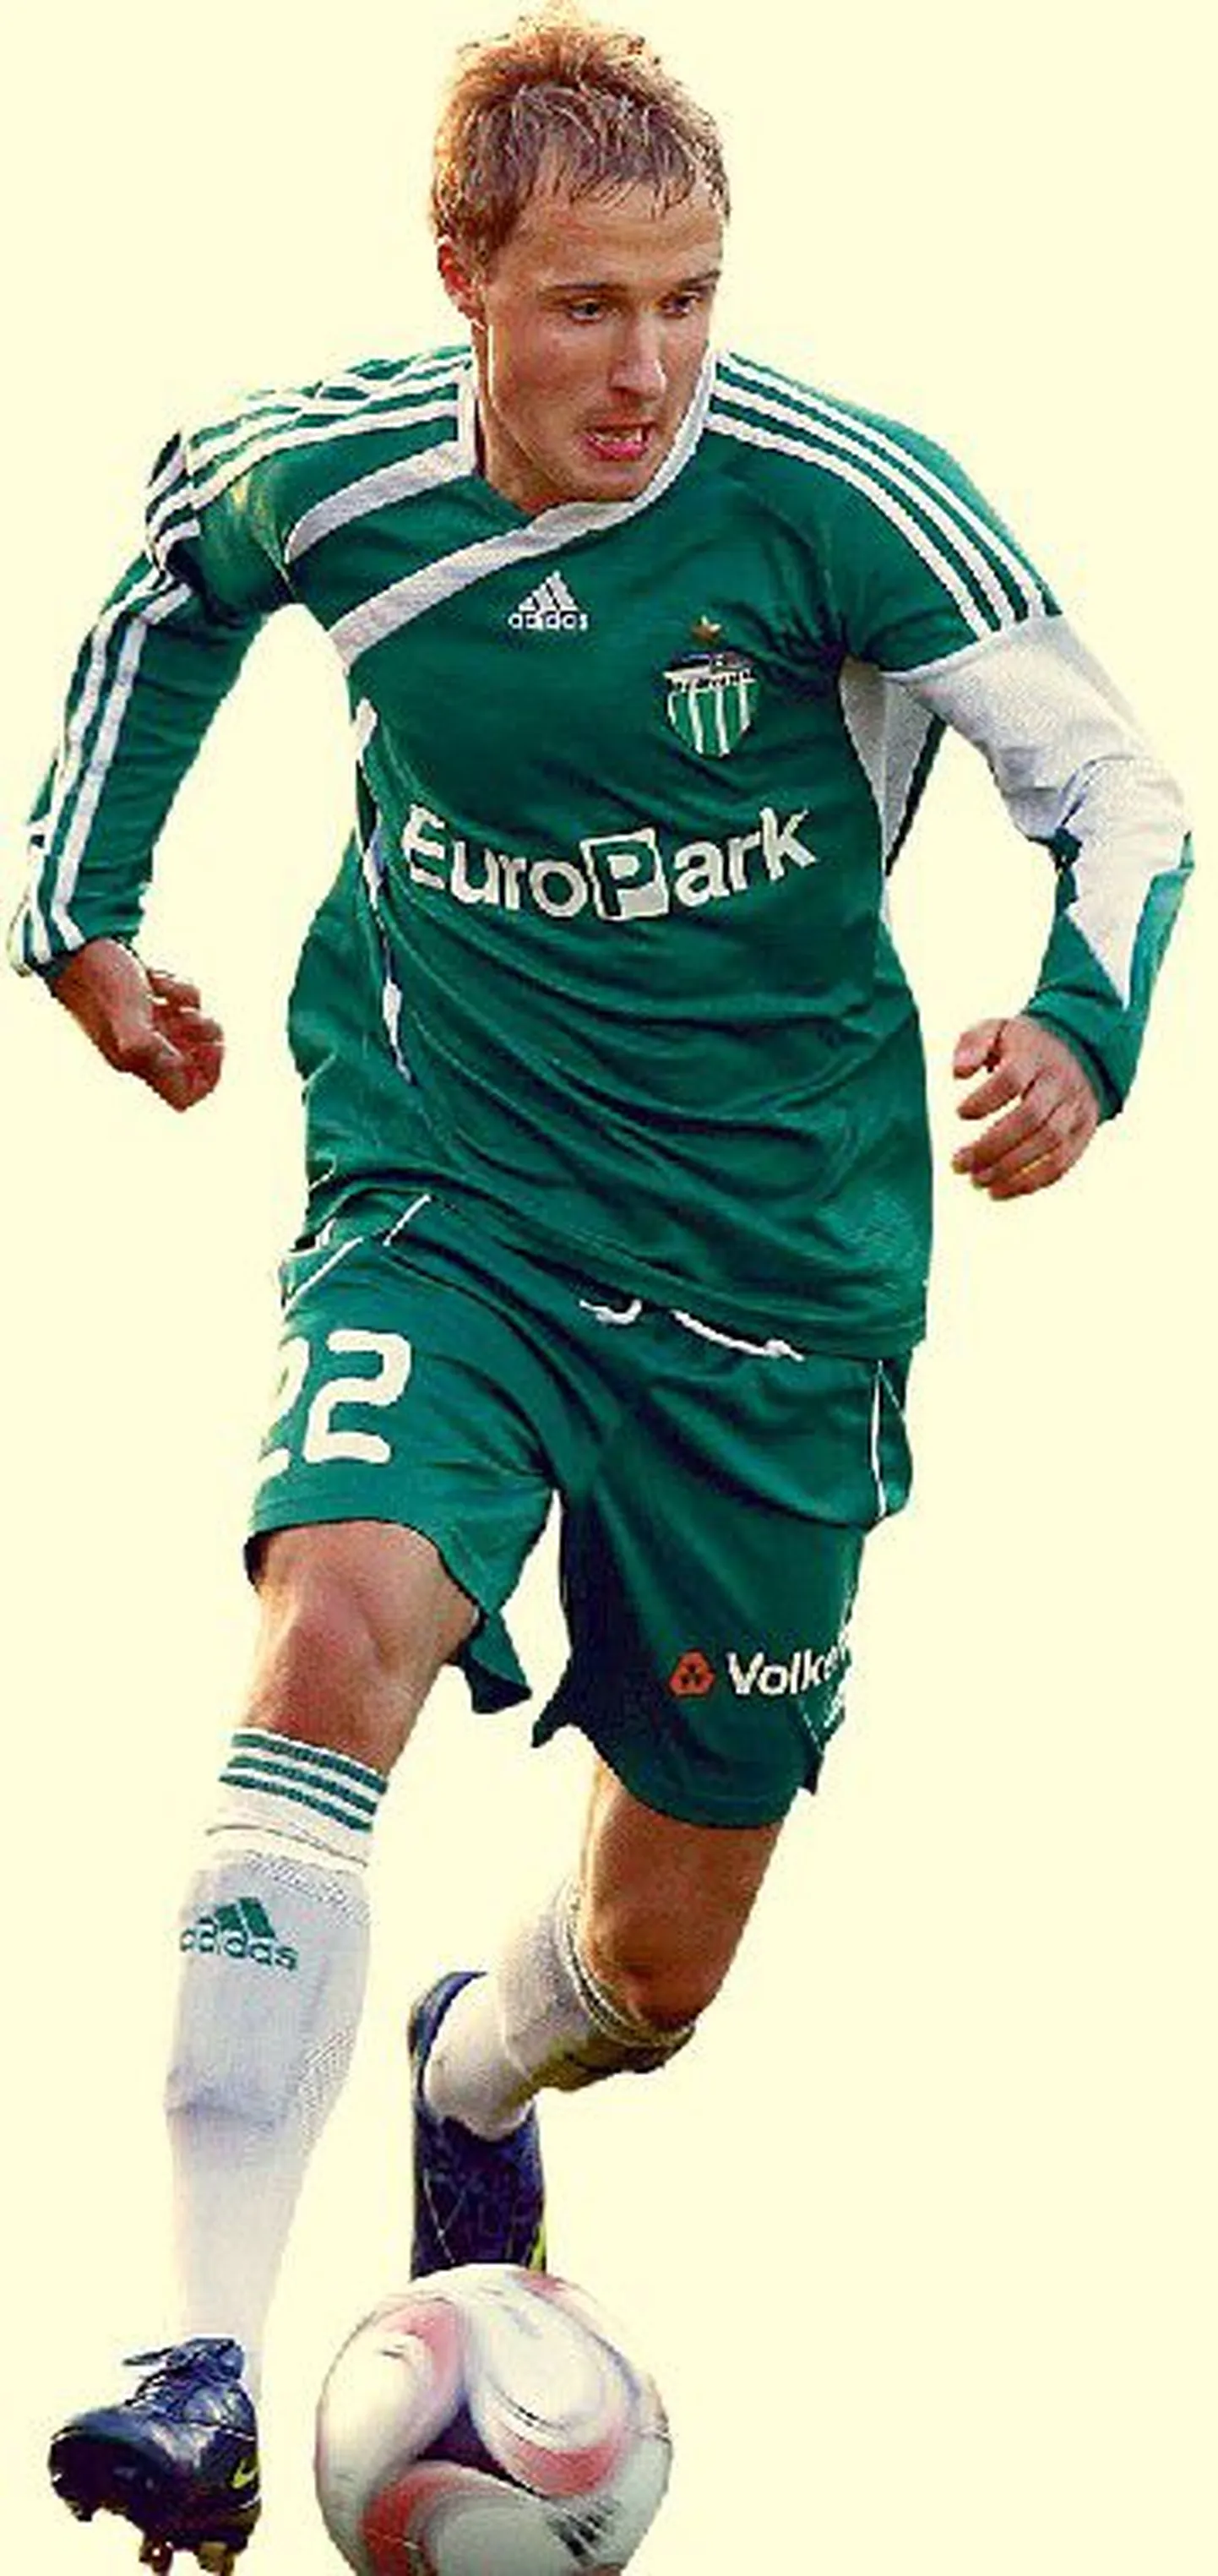 Сандер Пури, четыре года играющий за таллиннскую Levadia, в завершившемся сезоне был назван лучшим молодым игроком Эстонии.